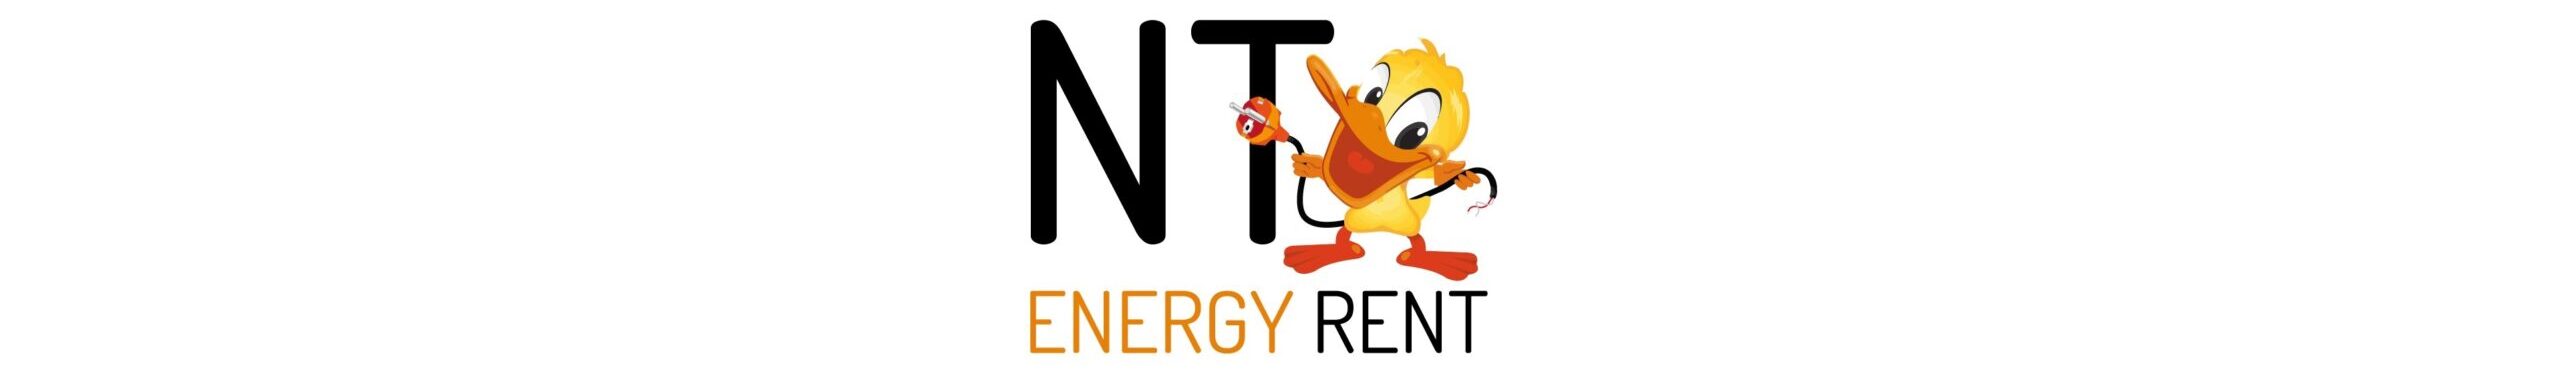 NT Energy Rent